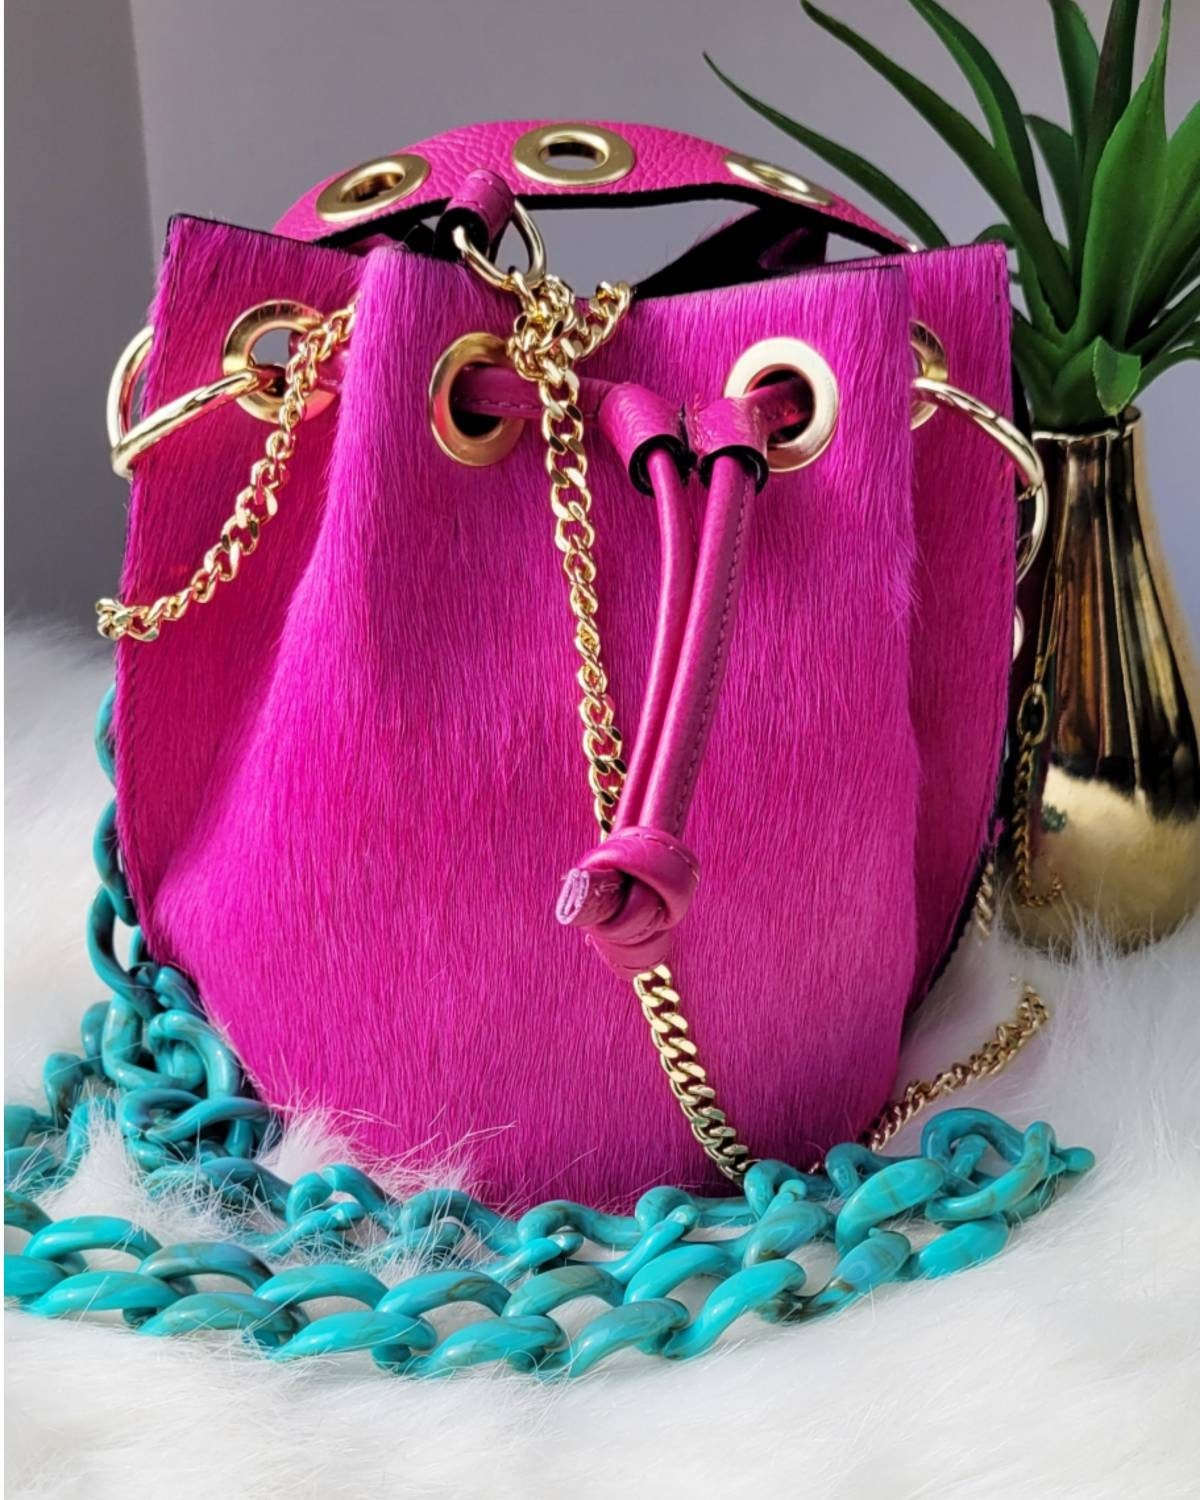 Sensi Studio Multicolor Straw Bucket Bag w/ Tags - Pink Bucket Bags,  Handbags - WSENS23286